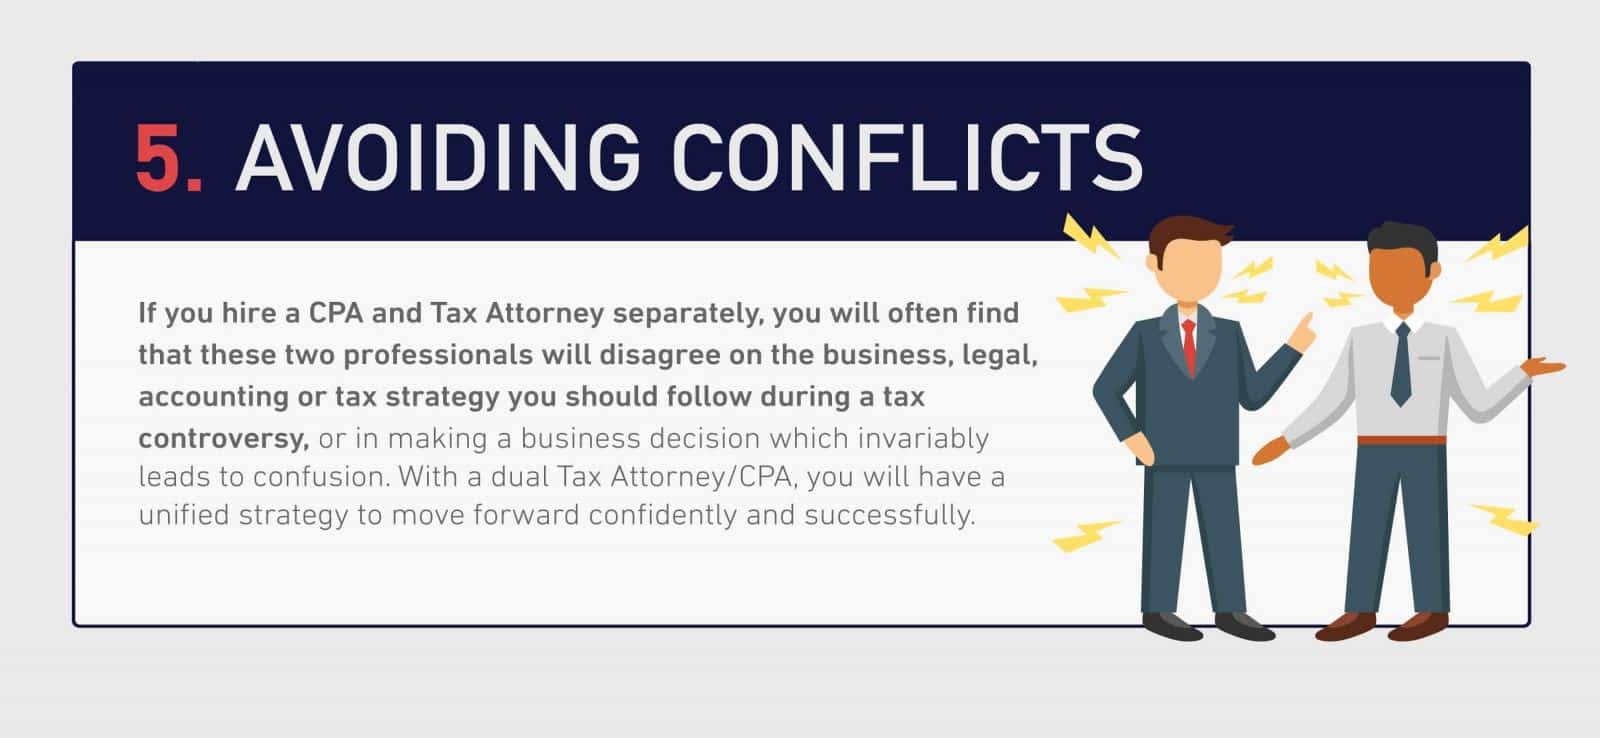 Avoiding-conflicts-klasing-associates-carlsbad-tax-attorney